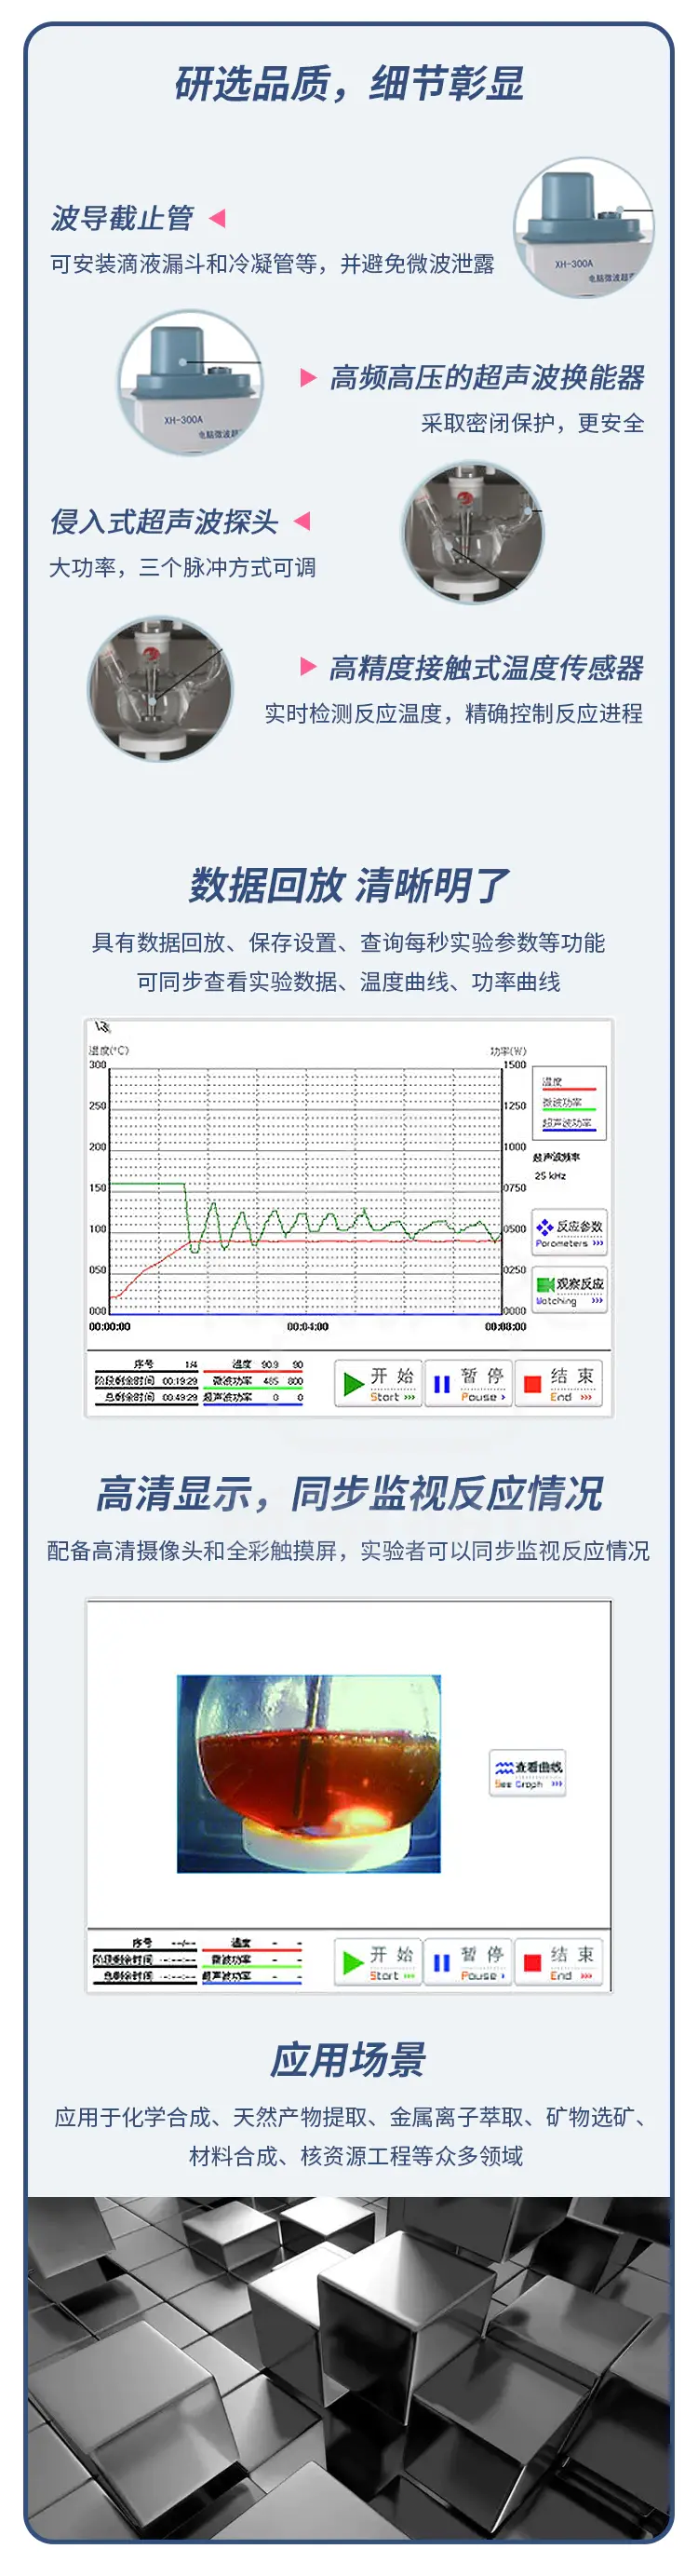 XH-300A电脑微波超声波组合合成萃取仪商品介绍3